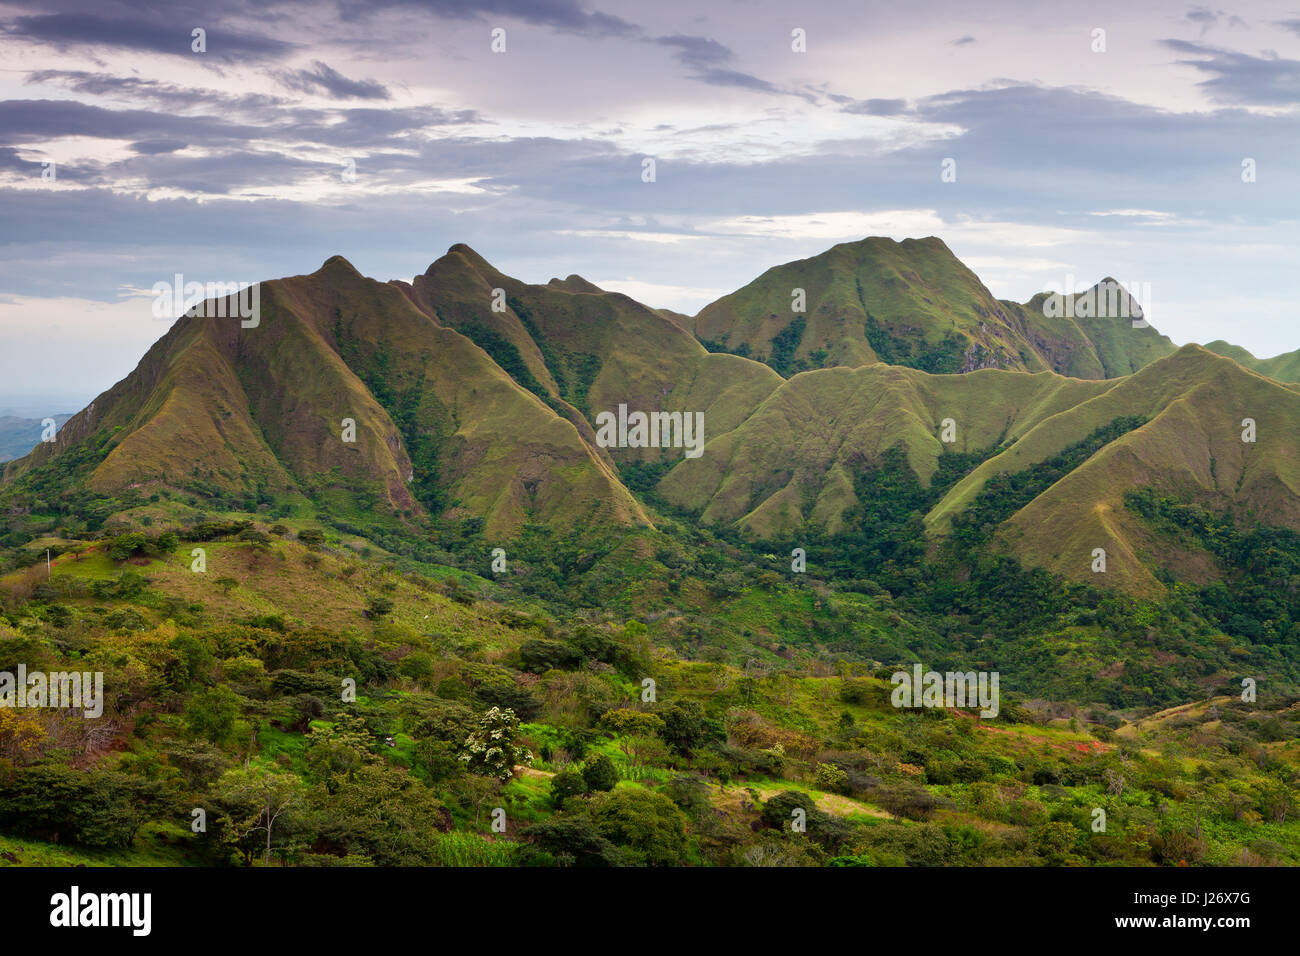 Panama-Landschaft am Abend in den Bergen der Cerros los Picachos de Ola, Cordillera Central, Provinz Cocle, Republik Panama, Mittelamerika. Stockfoto